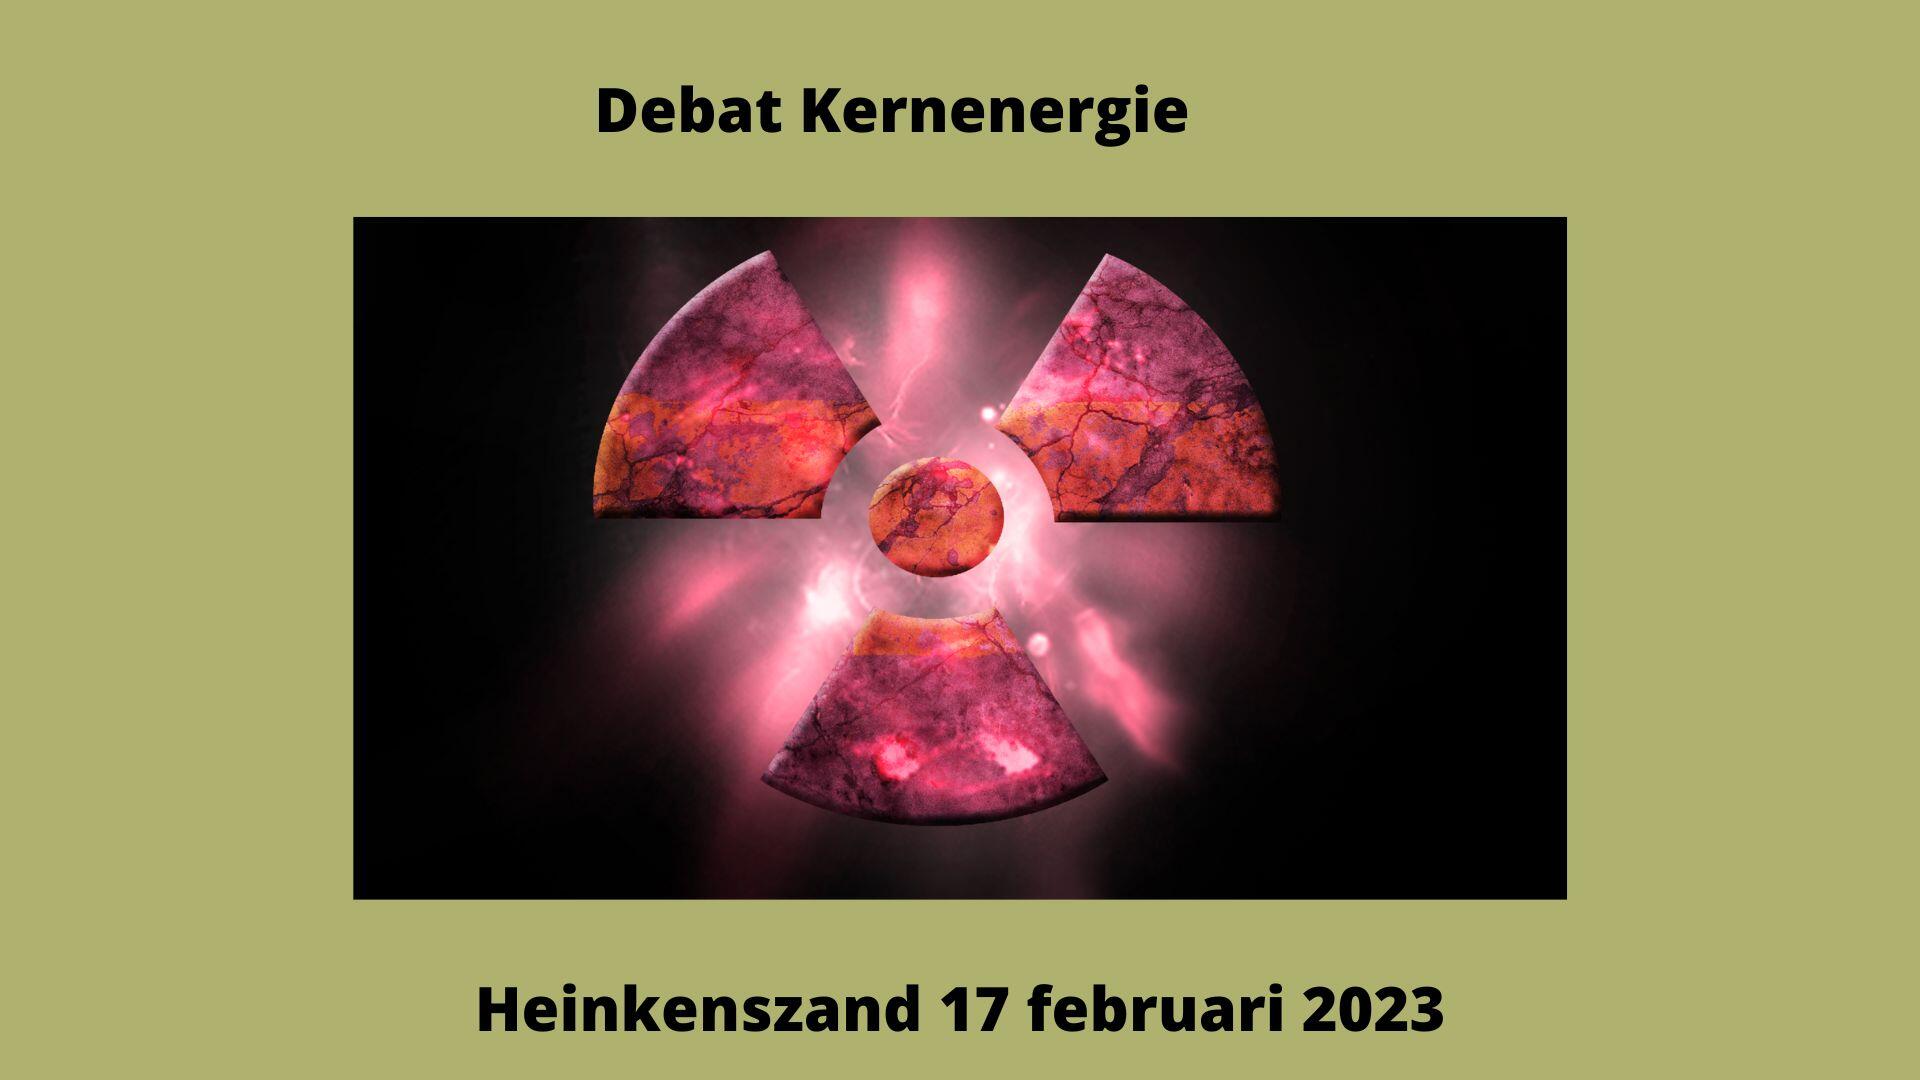 debat kernenergie heinkenszand